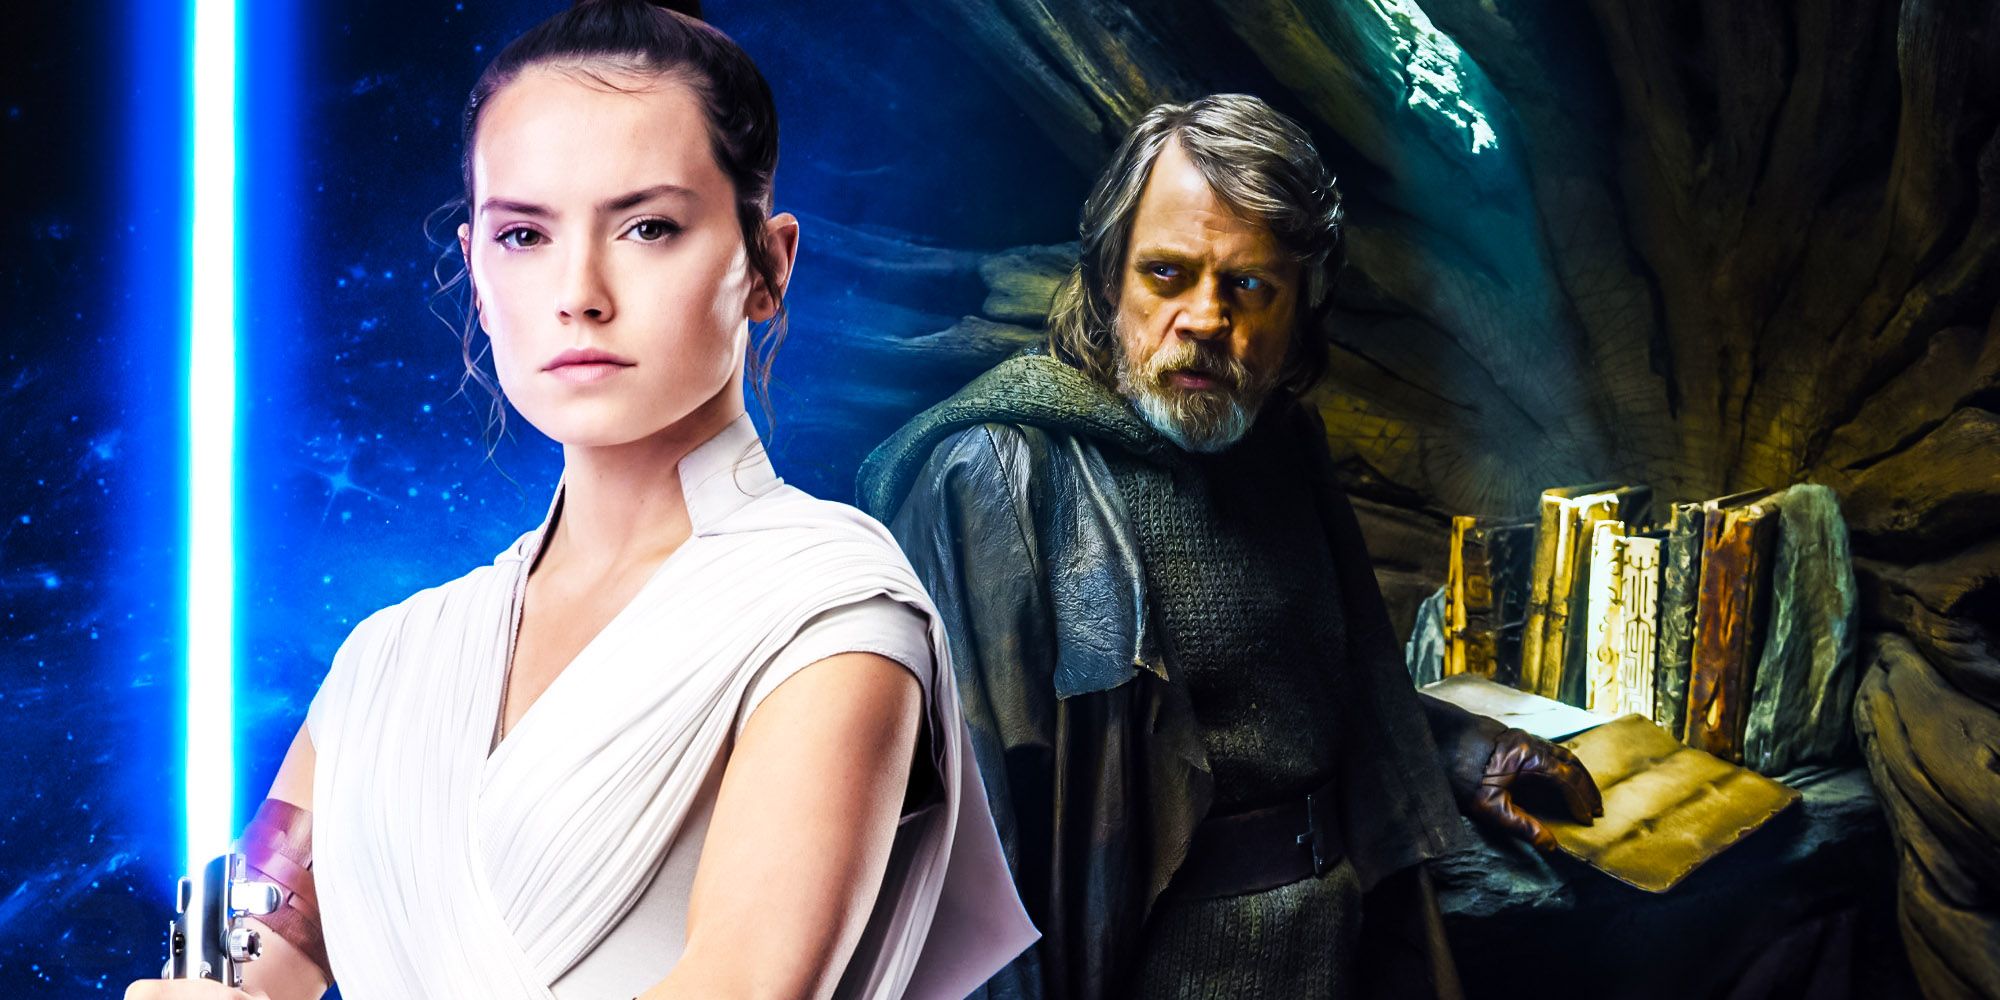 Rey and Luke Skywalker in Star Wars.